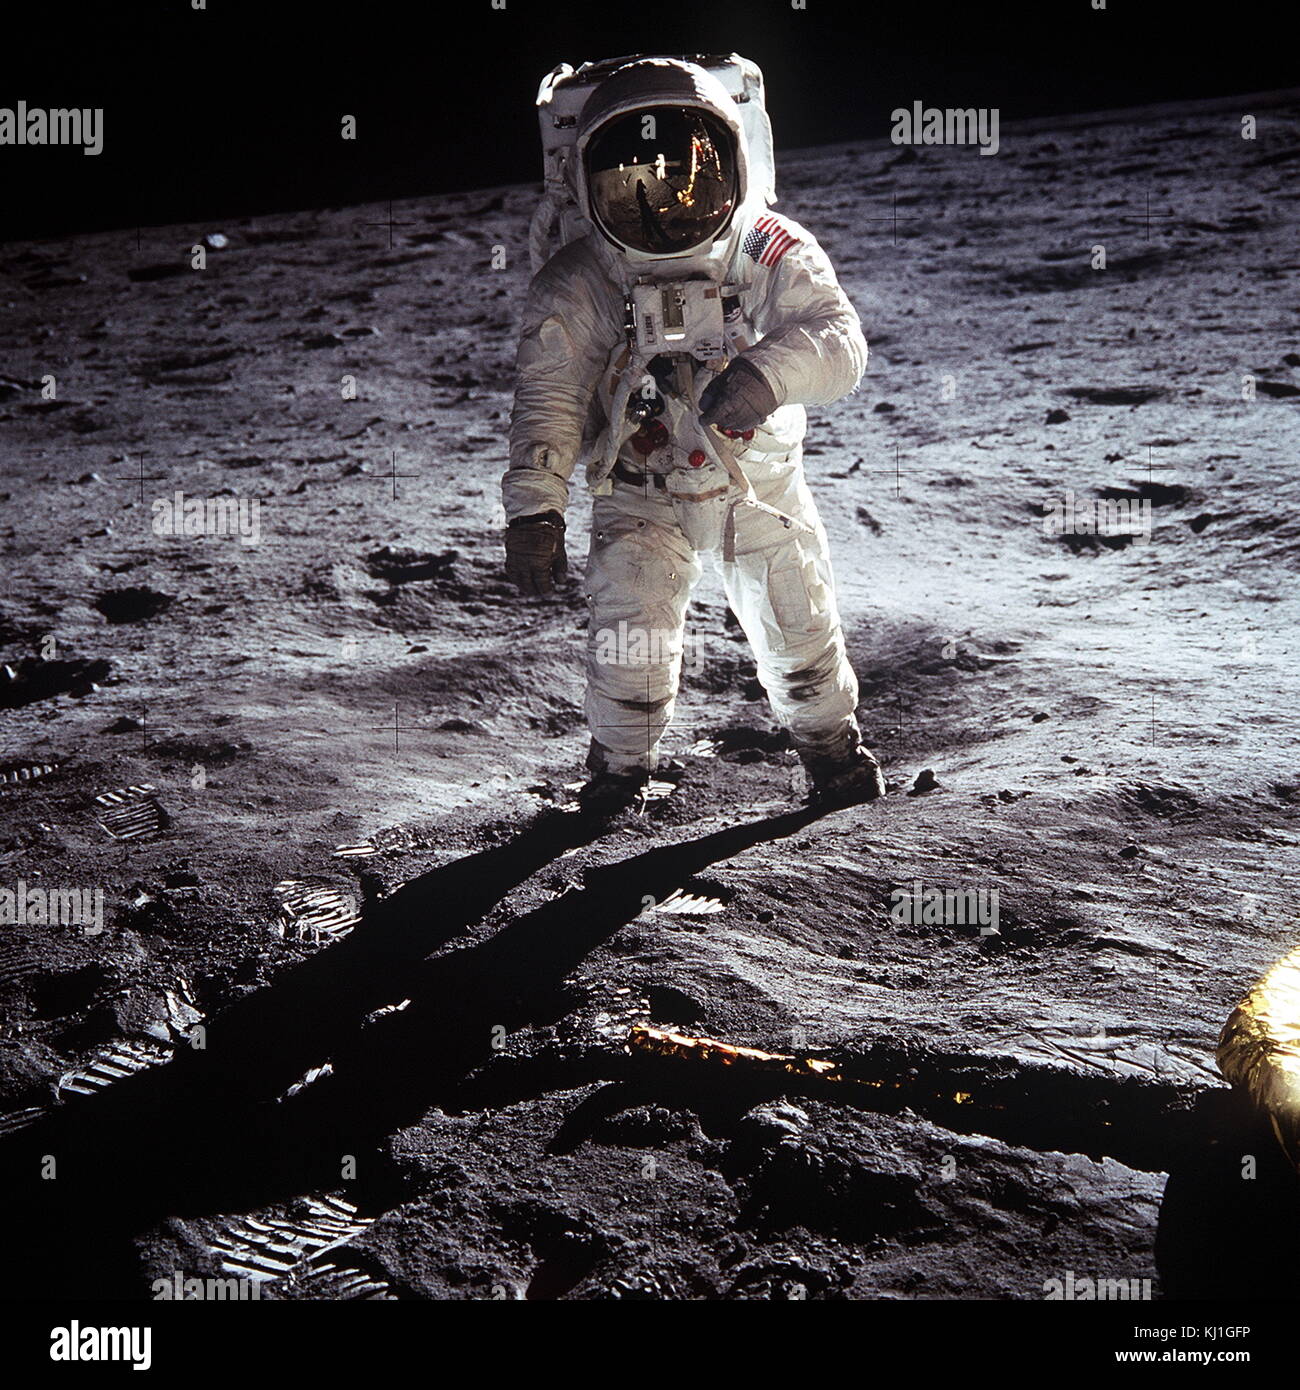 L'astronaute Buzz Aldrin, pilote du module lunaire, se dresse sur la surface de la lune près de la jambe du module lunaire, l'Aigle, au cours de l'Apollo 11 sur la lune. L'astronaute Neil Armstrong, commandant de mission, a pris cette photo avec une caméra 70mm surface lunaire. 21 Juillet 1969 Banque D'Images